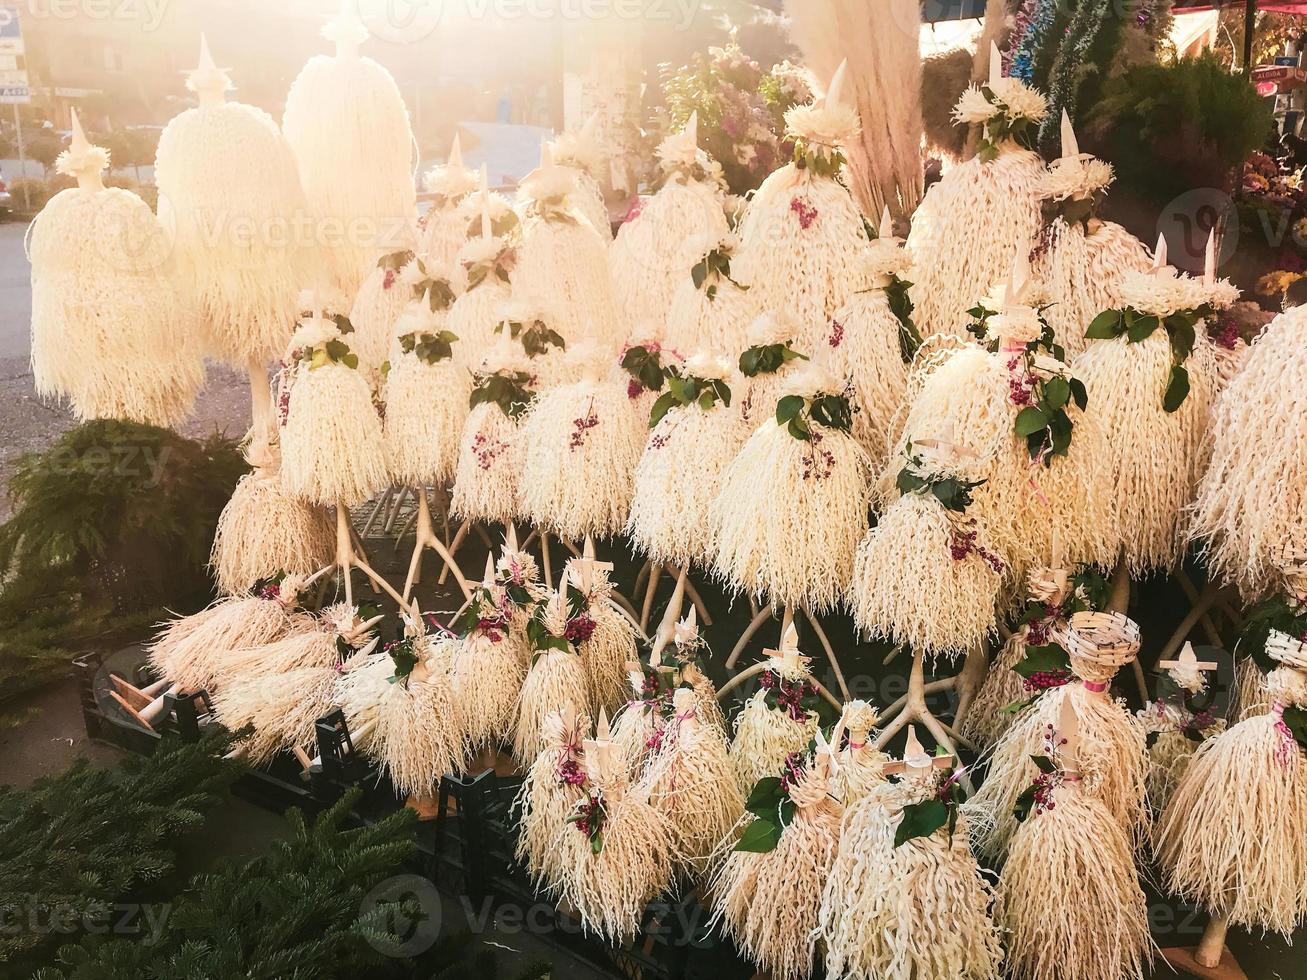 chichilaki - Georgische kerstboom gemaakt van gedroogde hazelnoottakken te koop op straatmarkt foto